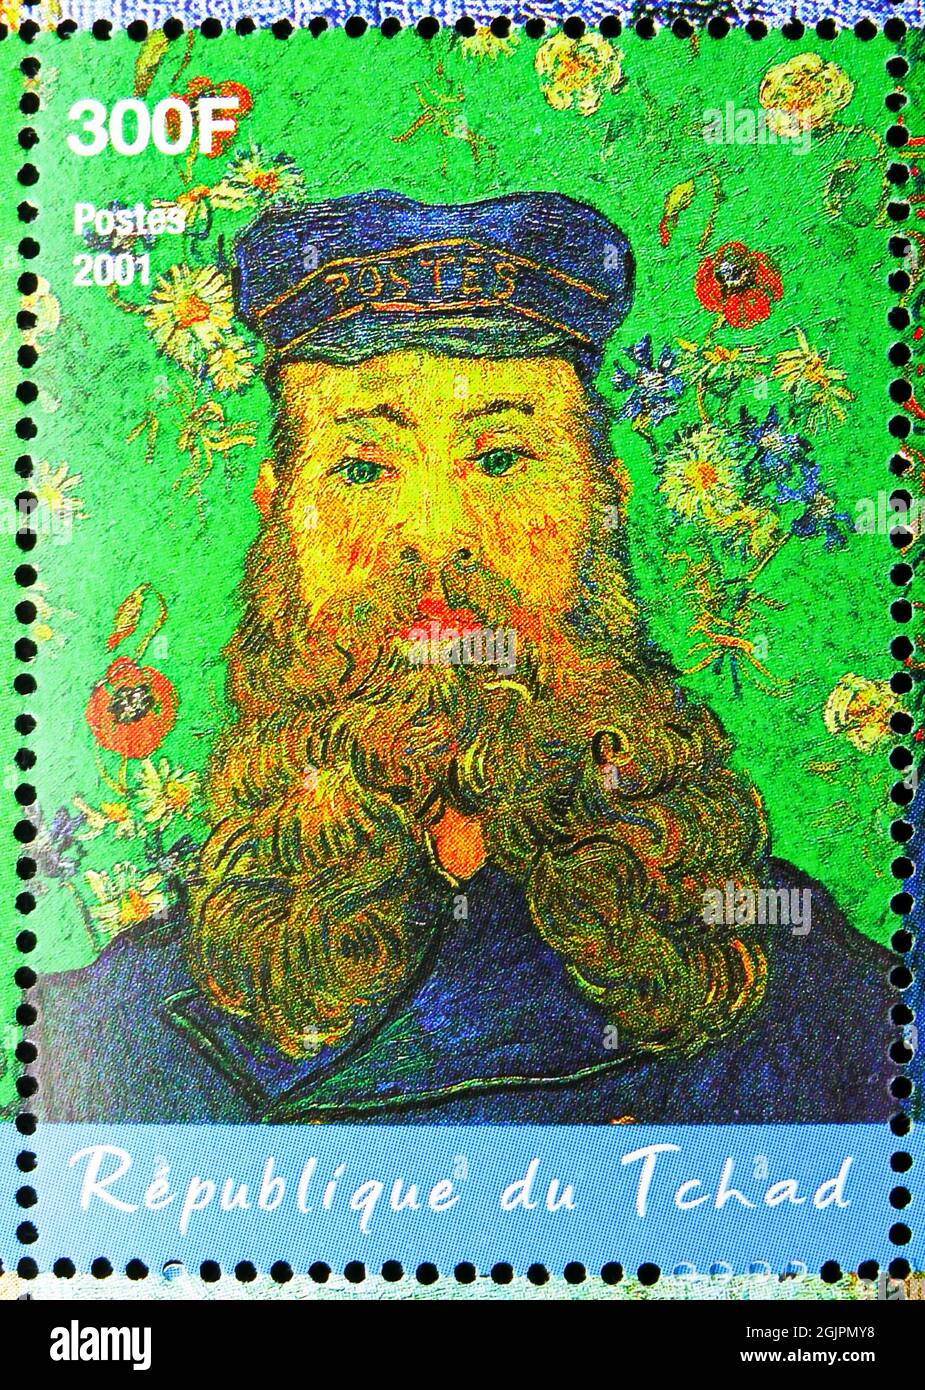 MOSCÚ, RUSIA - 17 DE ABRIL de 2021: Sello postal impreso en Chad muestra Retrato del cartero Joseph Roulin, Vincent Van Gogh serie, alrededor de 2001 Foto de stock